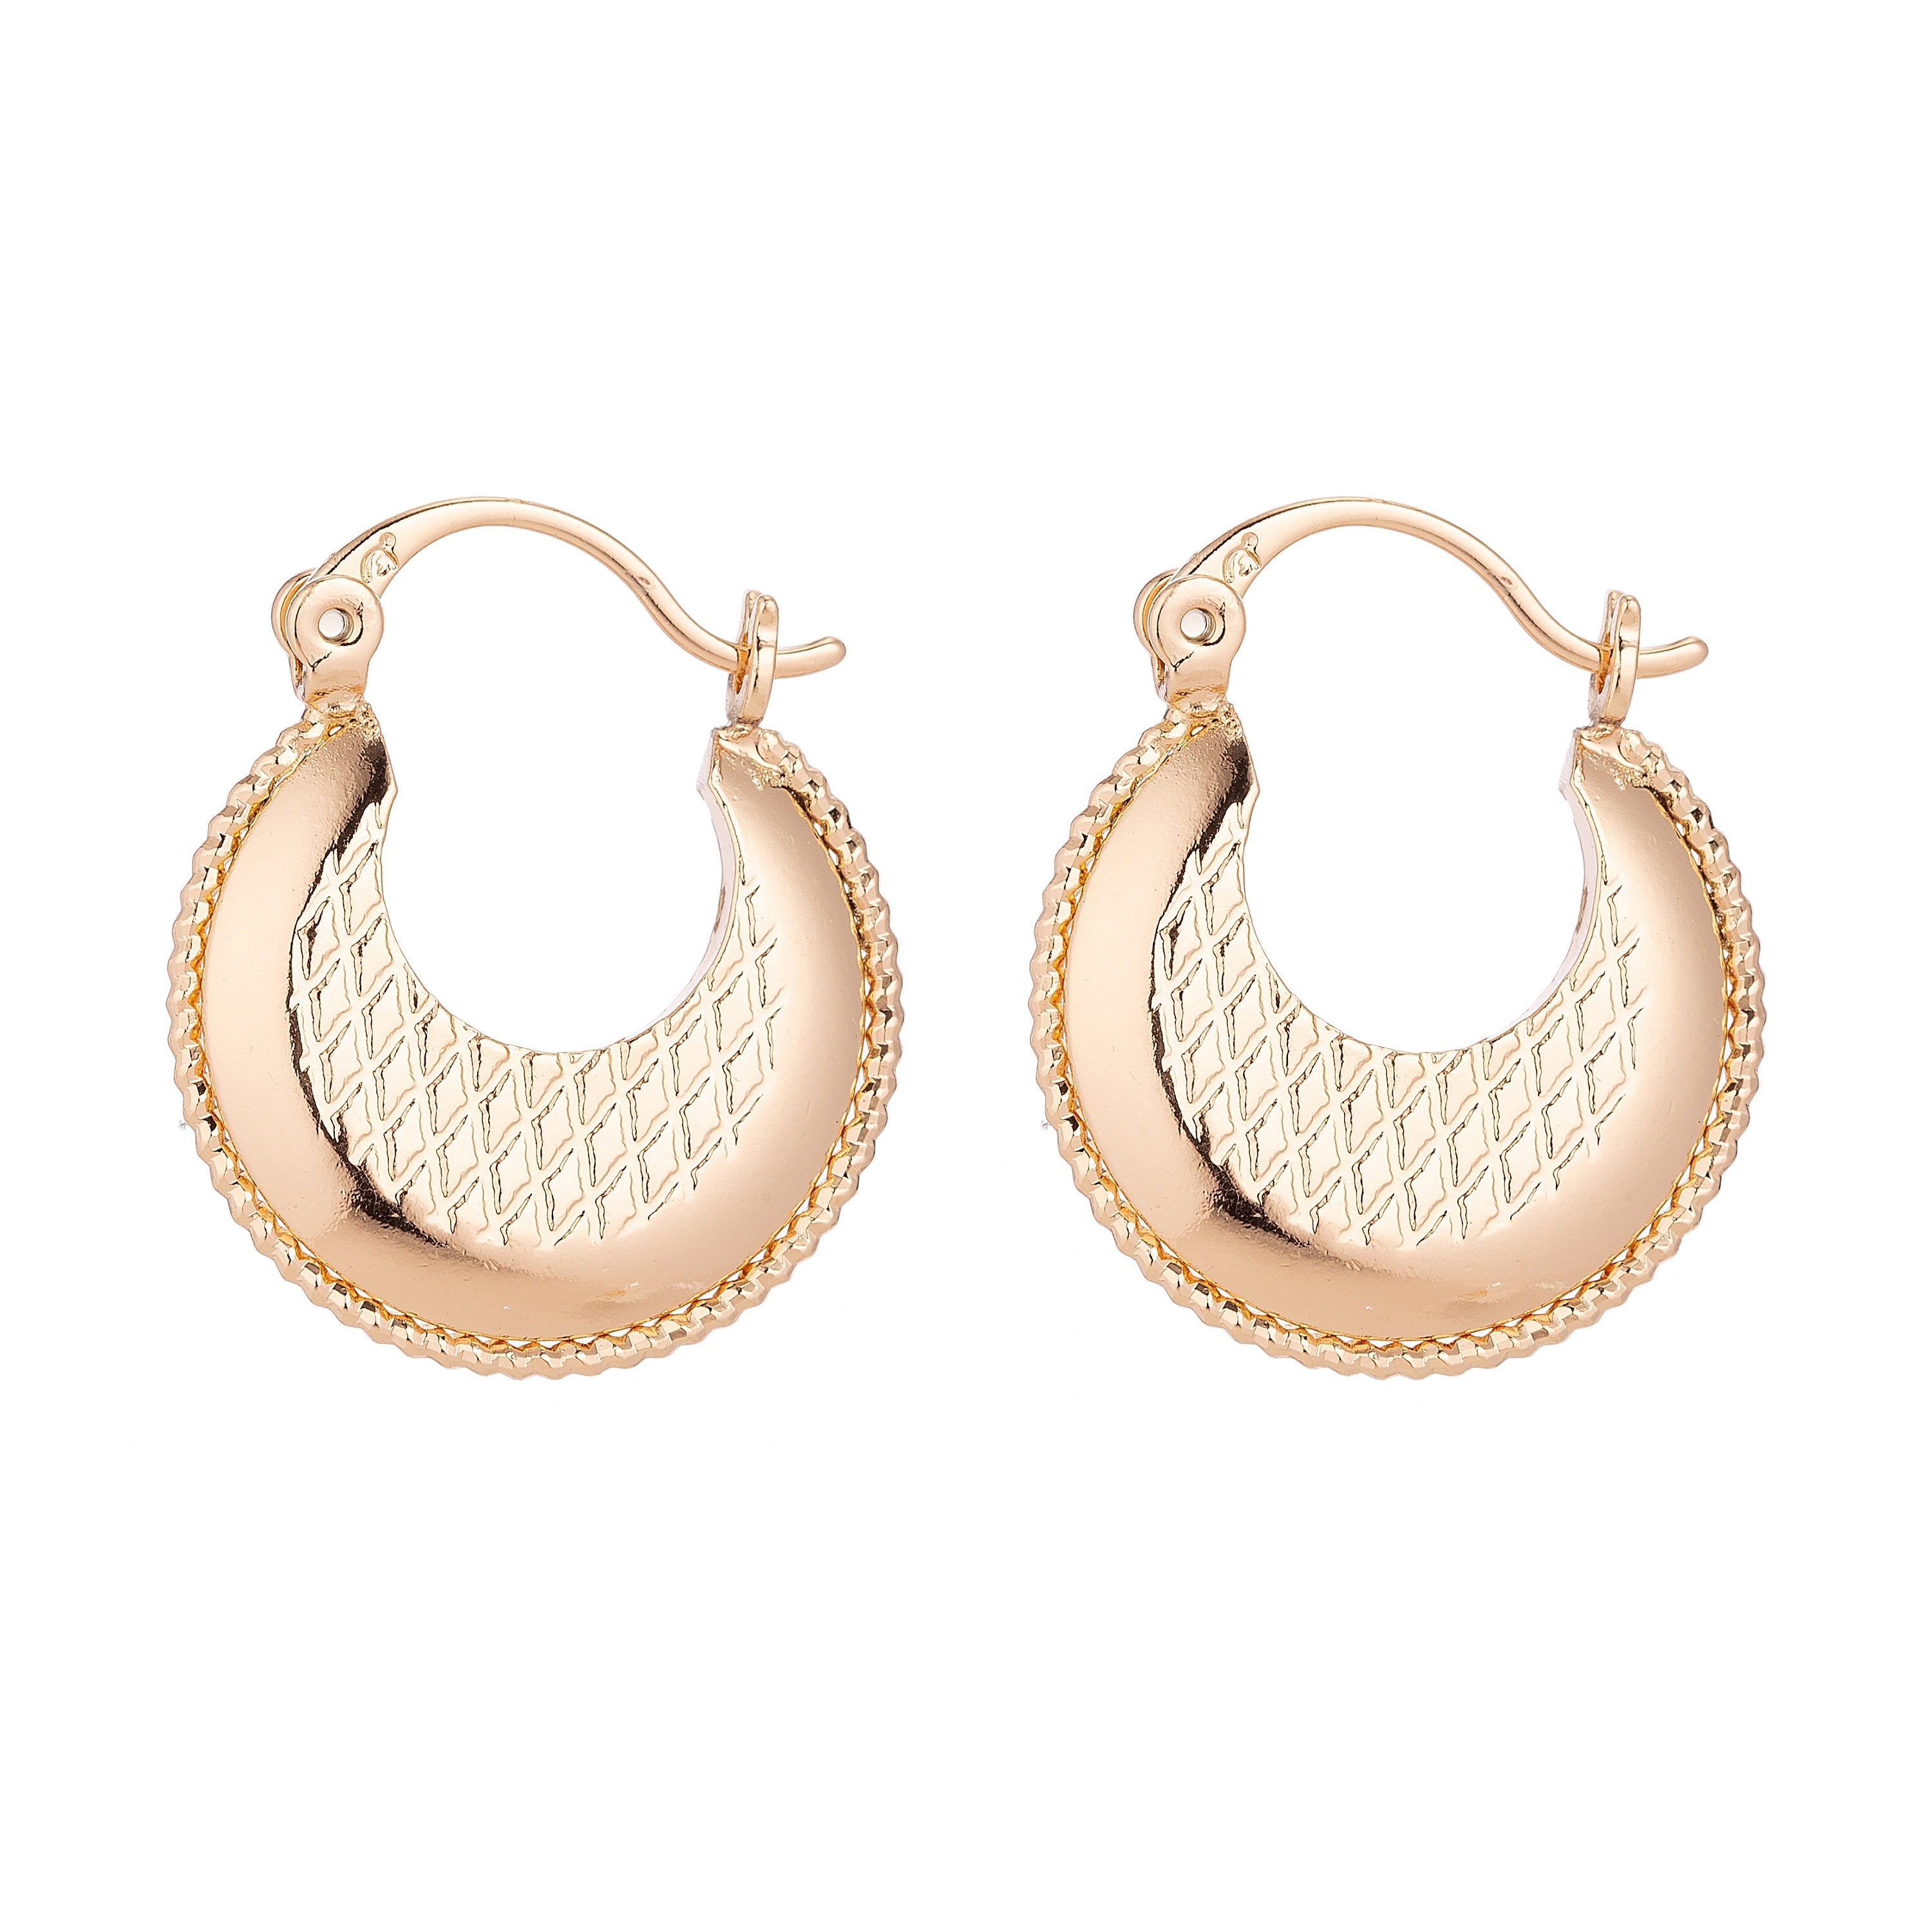 Gold Rope Diamond Patterned Hoop Earrings, Gold Jewelry, Gold Plated, Patterned Earrings, Lightweight Earrings - DLUXCA